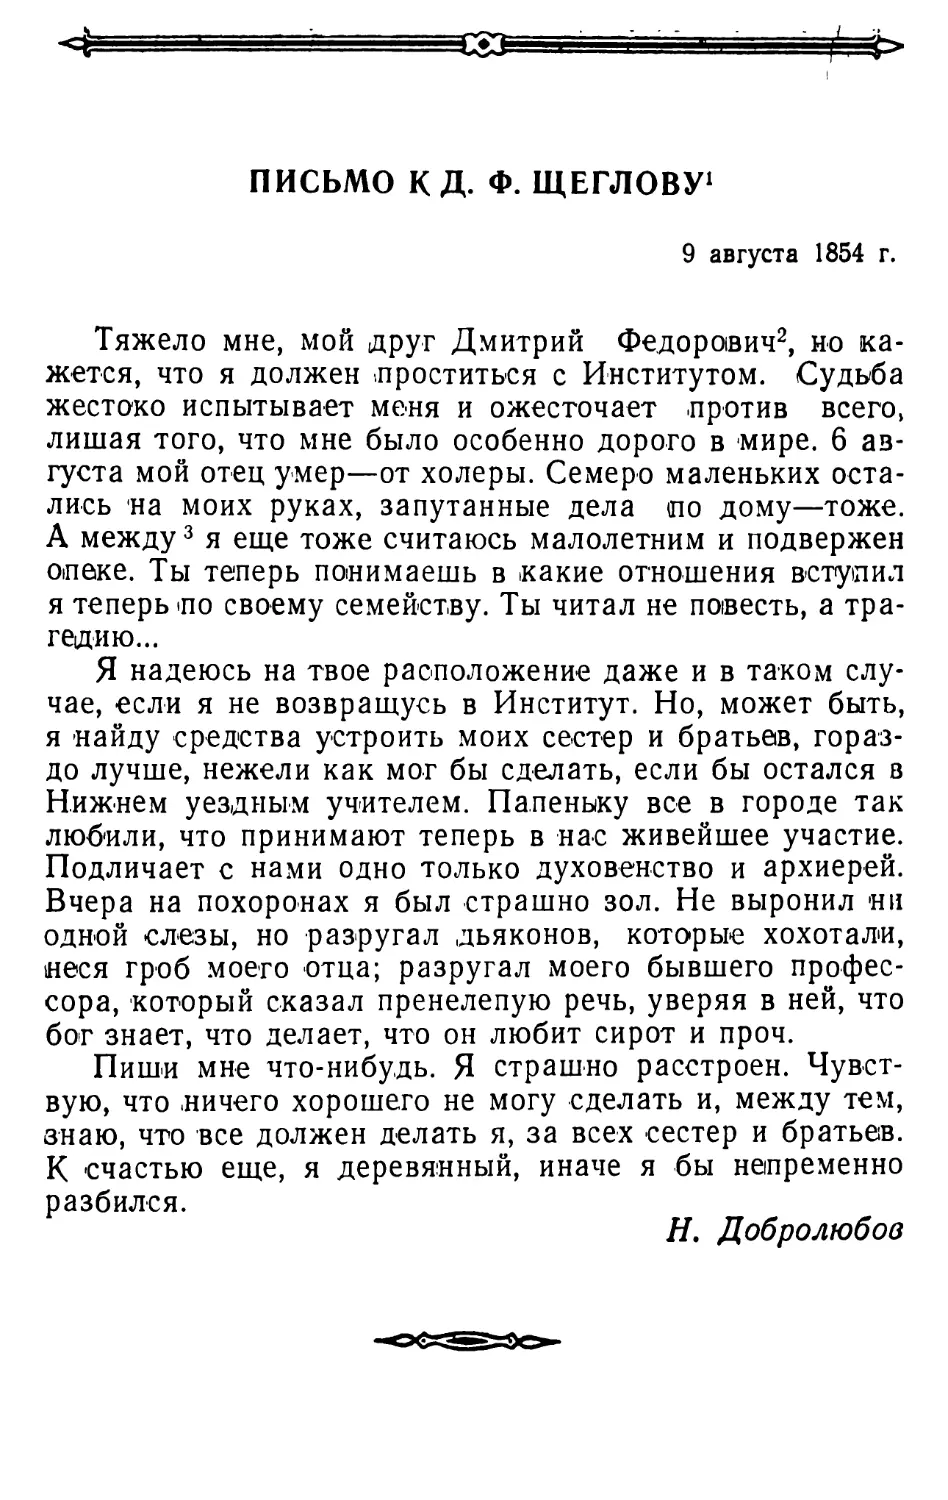 Письмо к Д.Ф. Щеглову